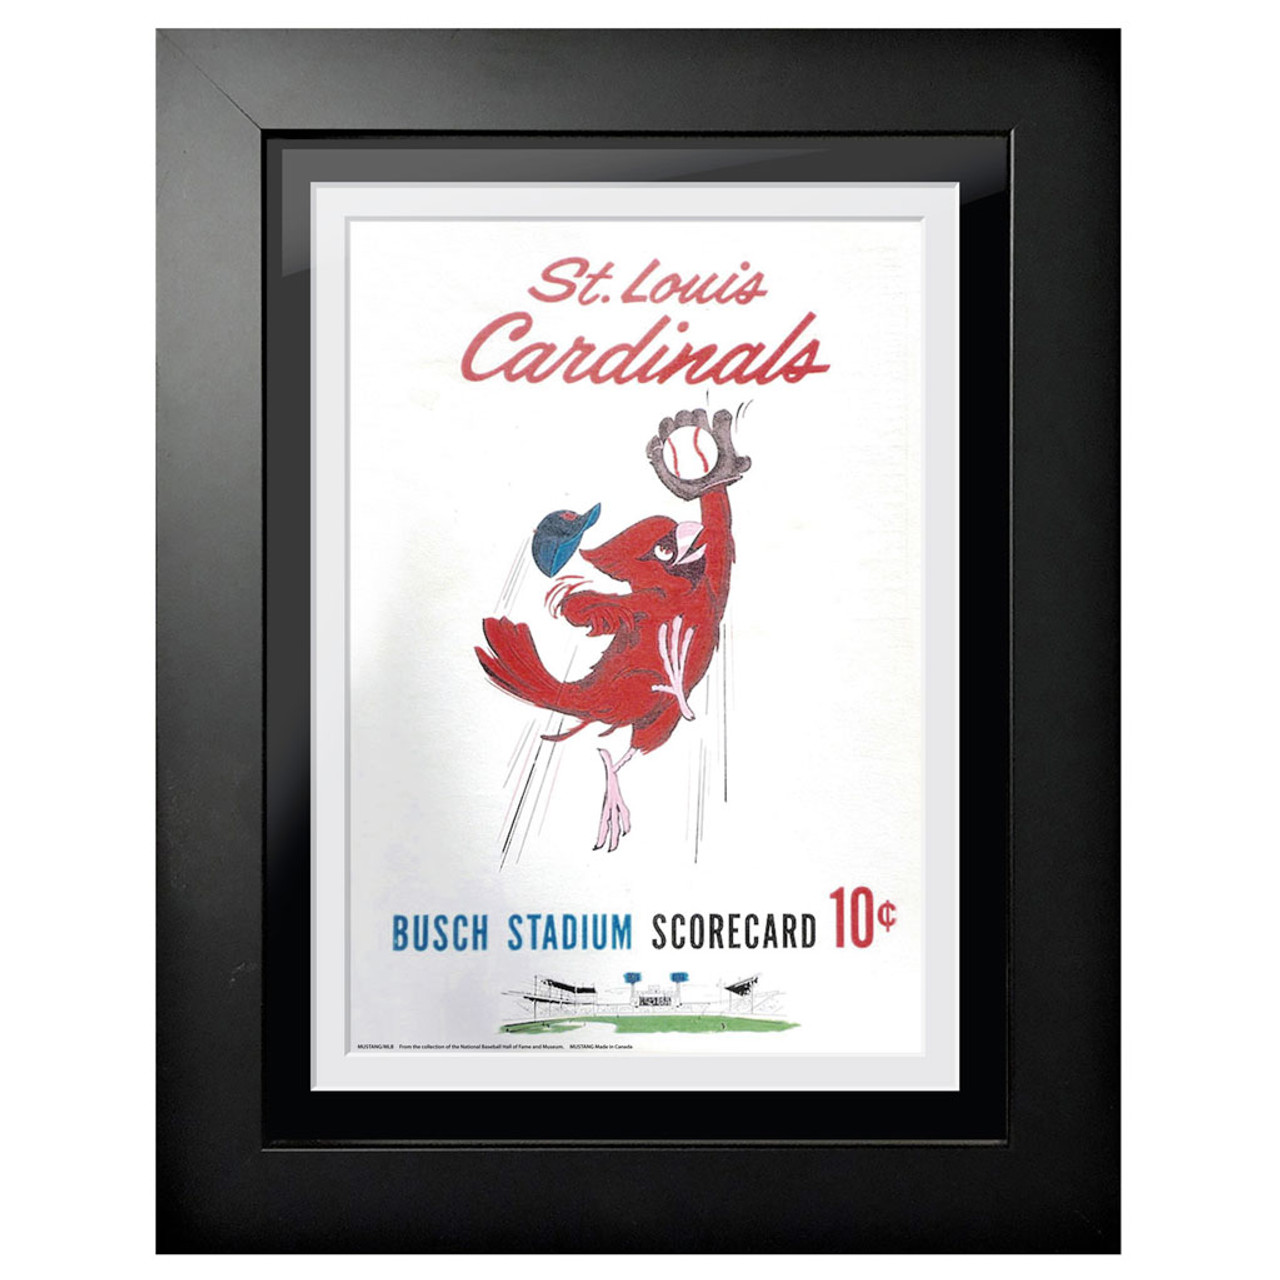 St. Louis Cardinals 1959 Scorecard Cover 18 x 14 Framed Print